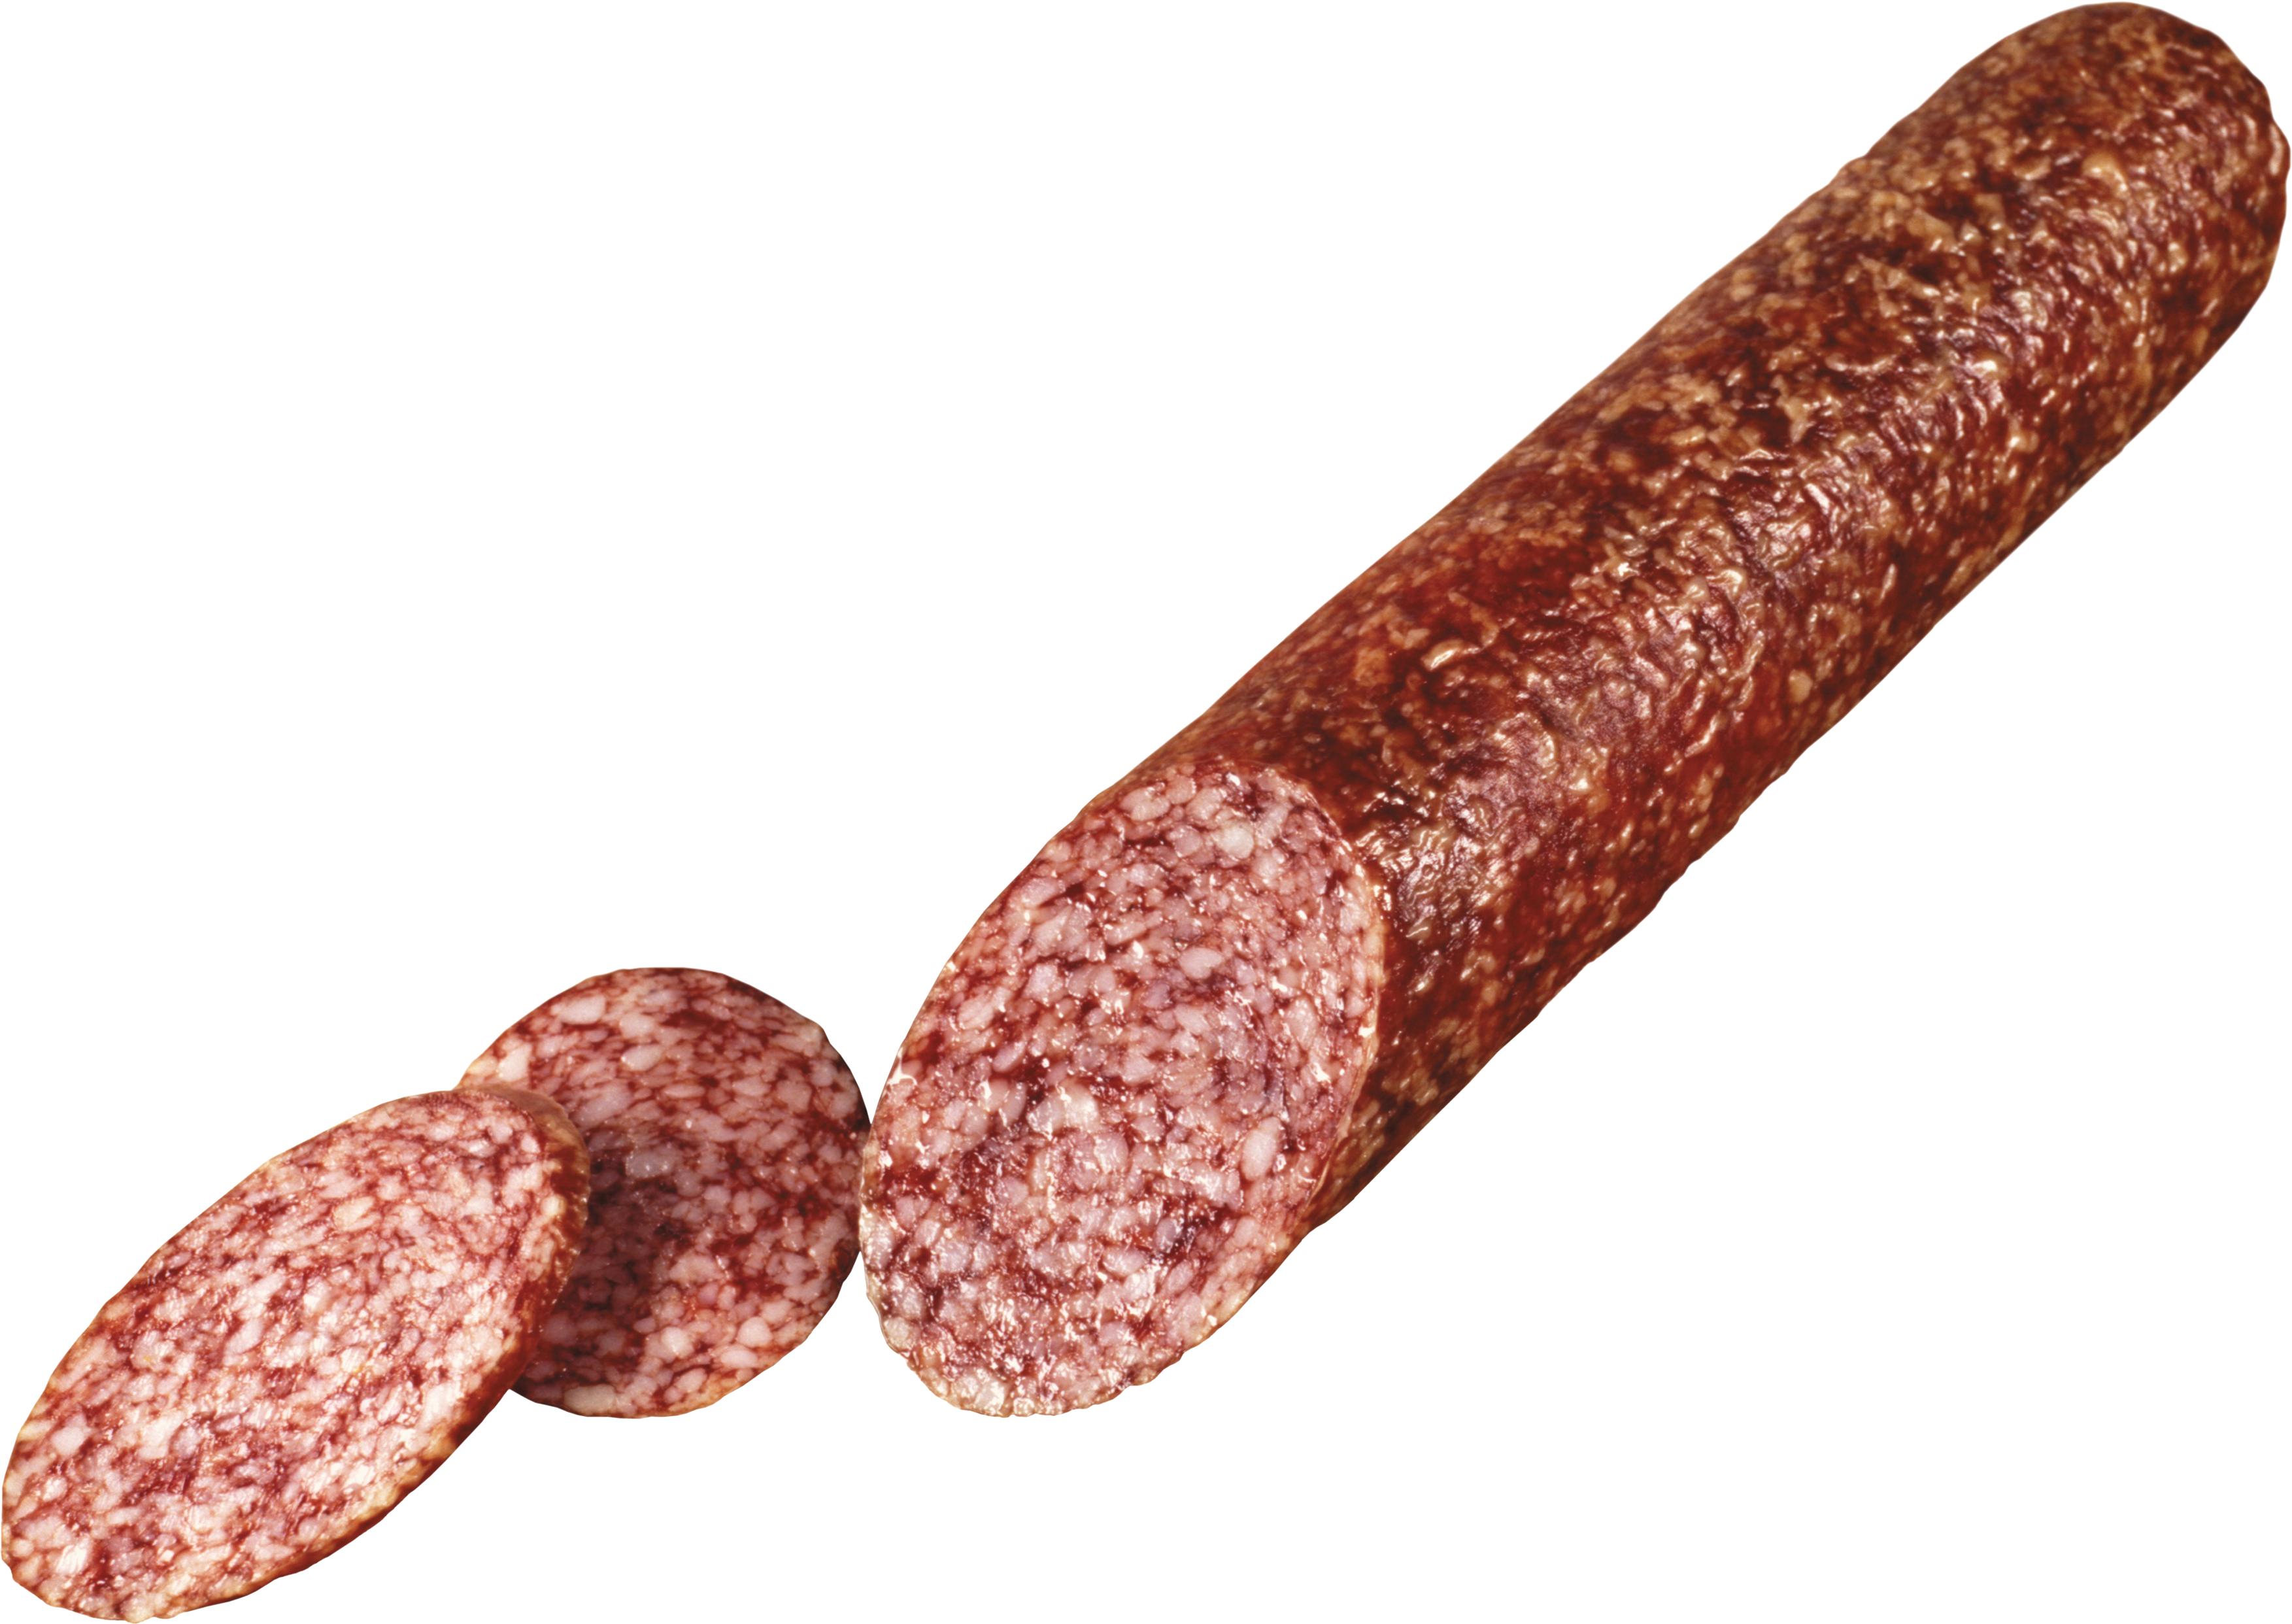 Sausage PNG image hd